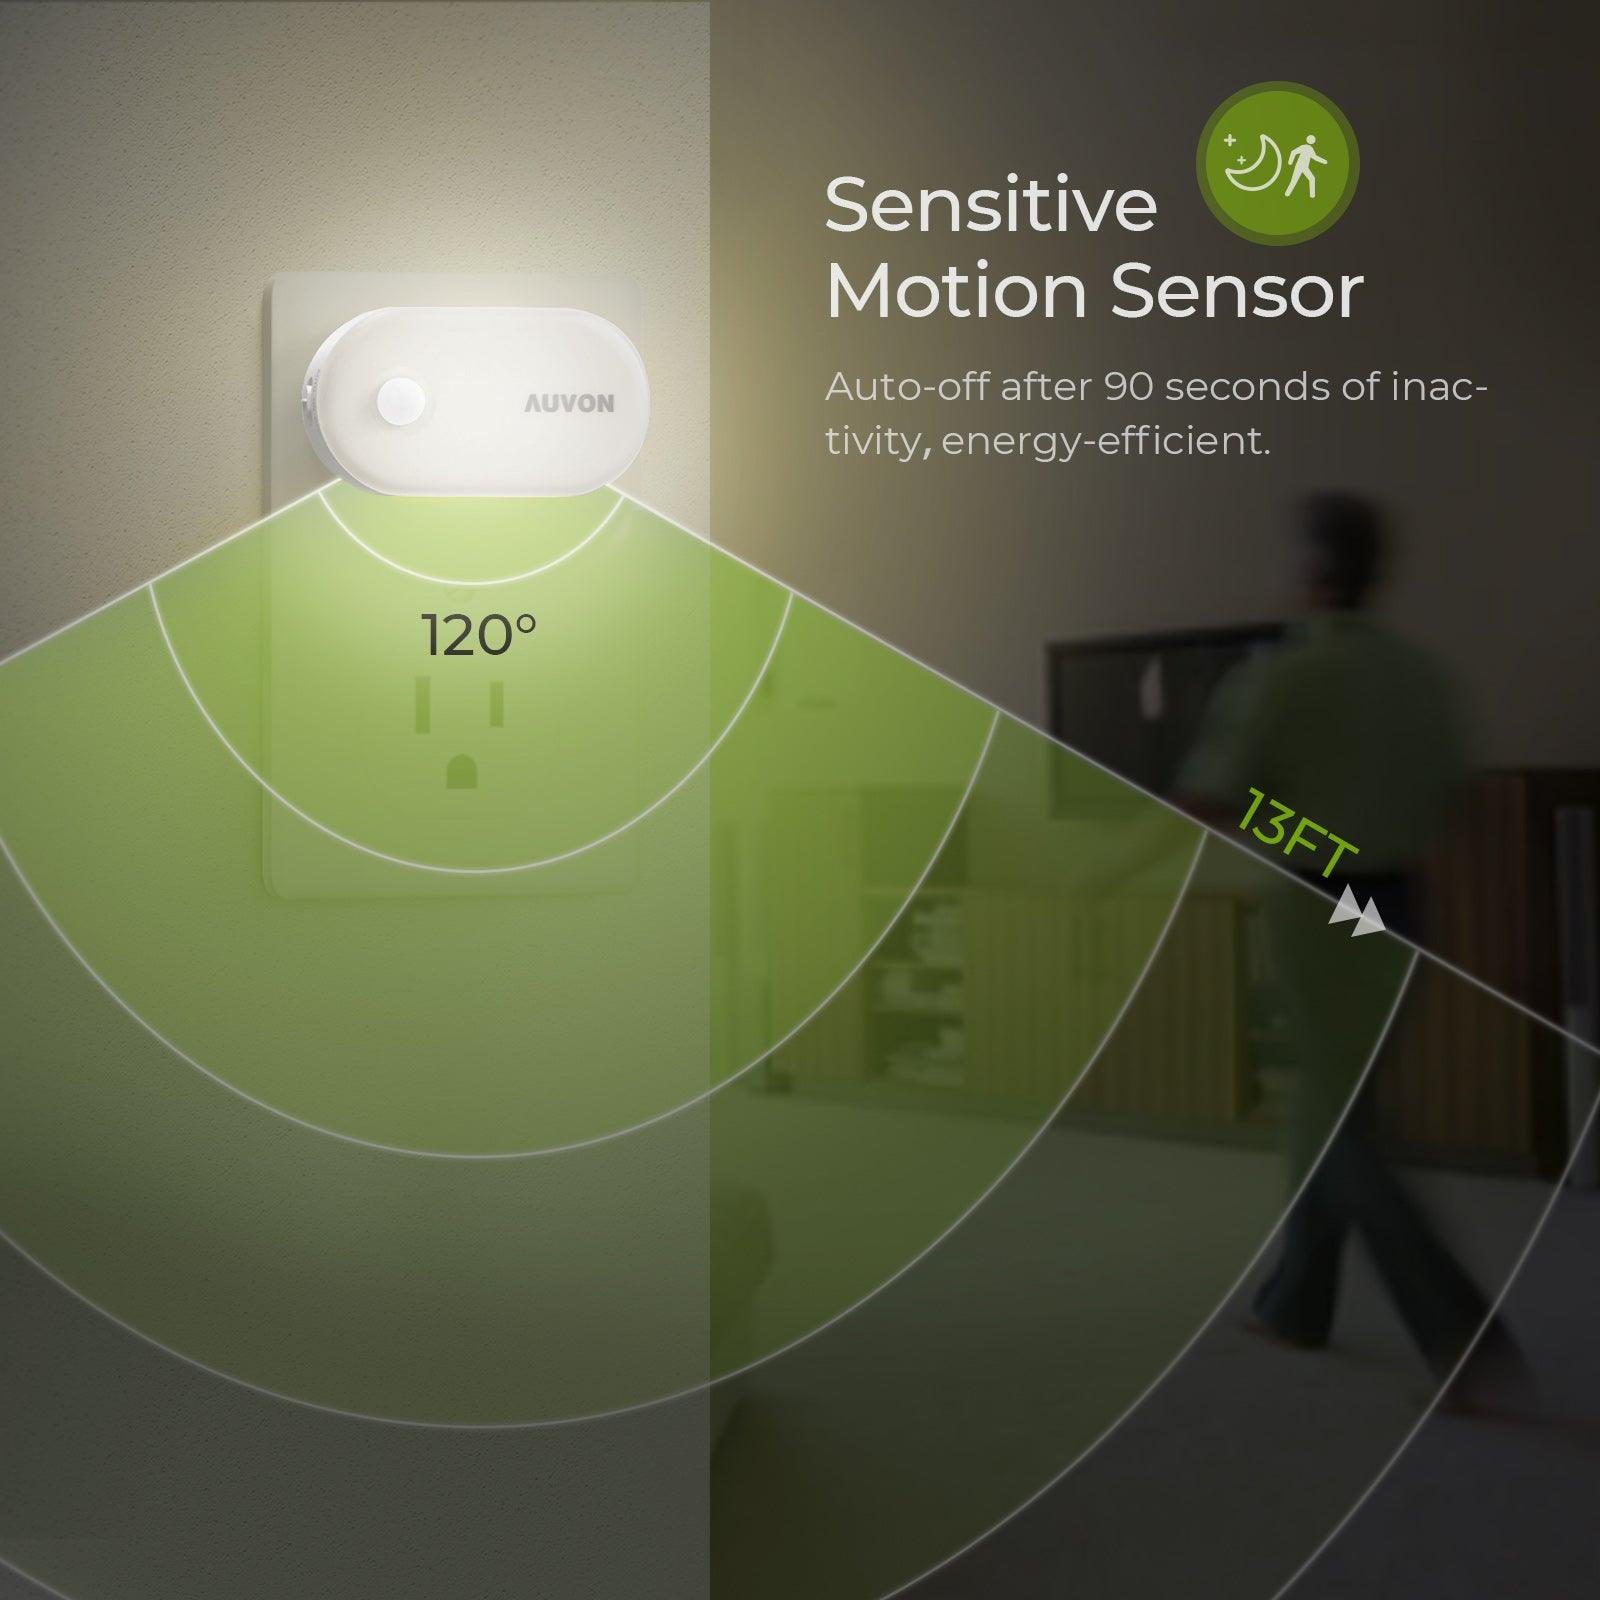 Toilet Night Light Motion Sensor the Original LED 8 Colors Toilet